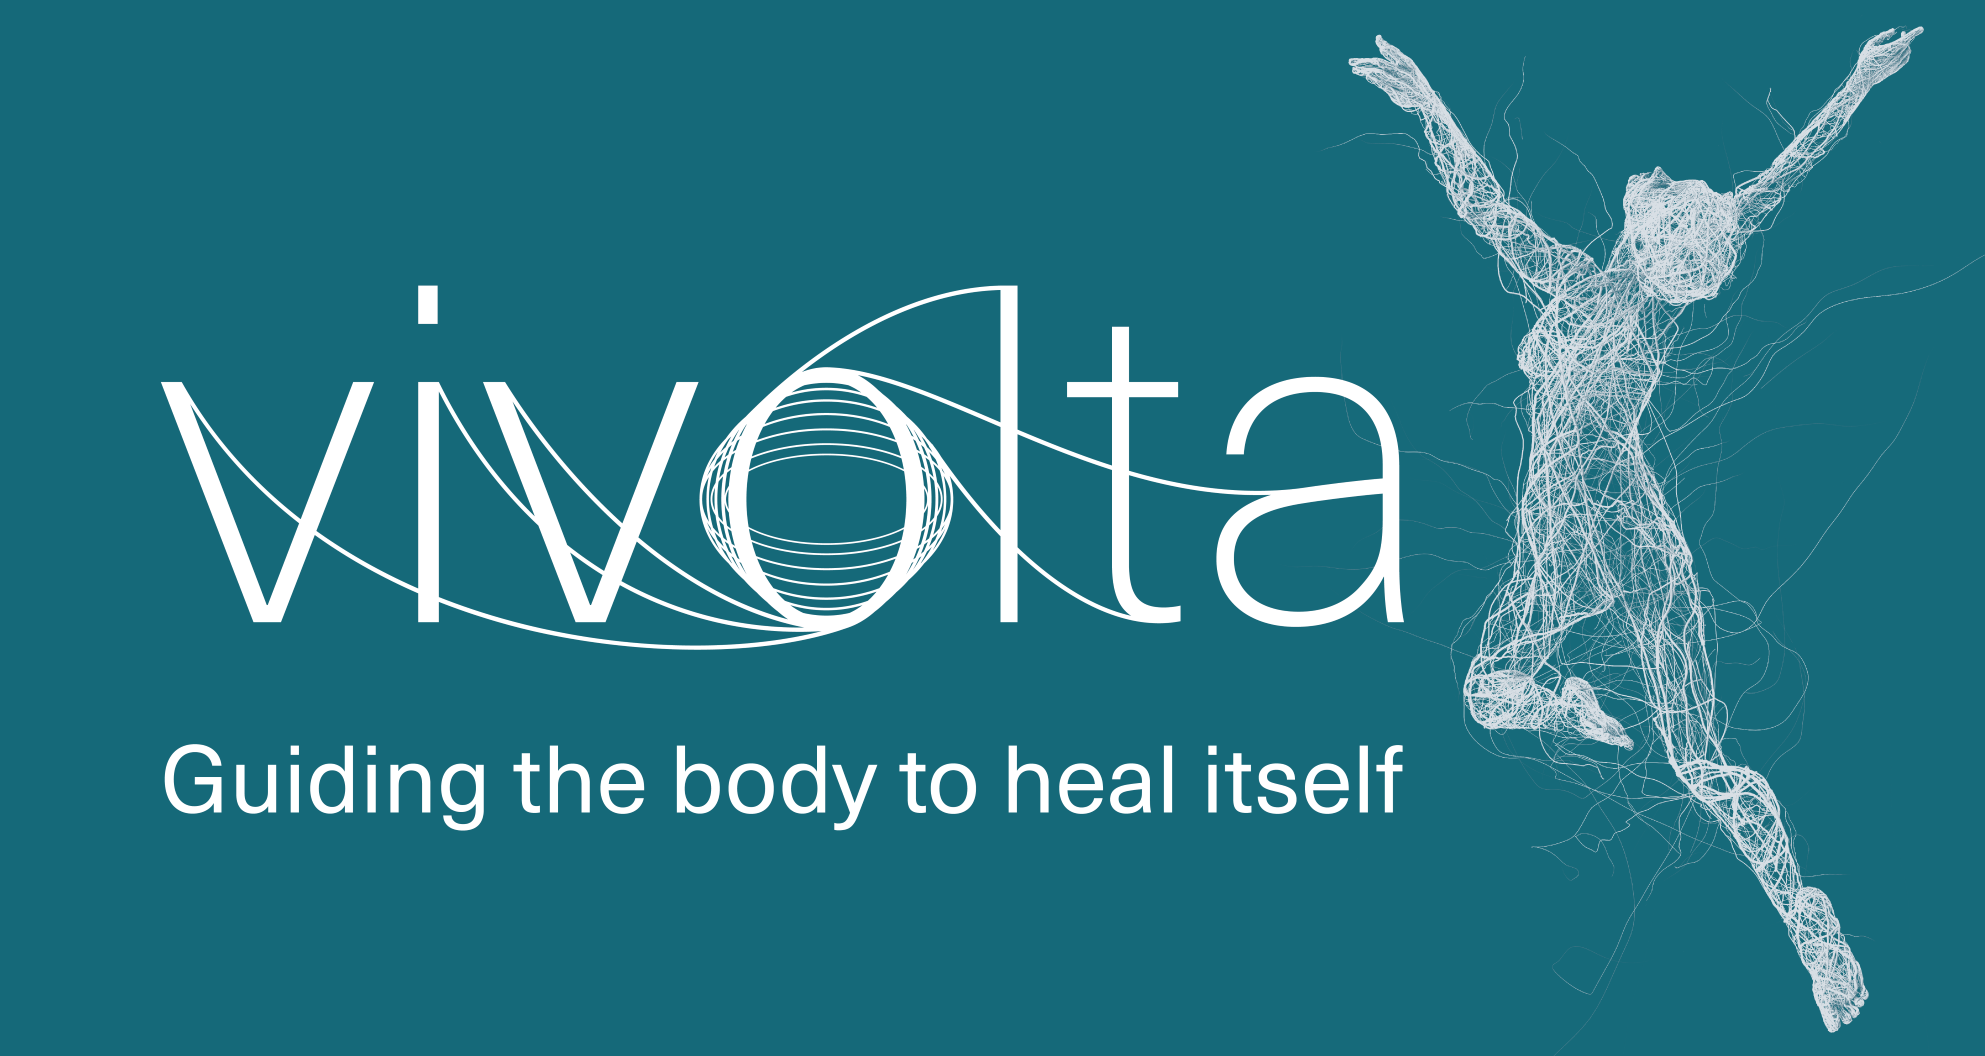 Het logo van Vivolta toont de nanodraden-technologie. Afbeelding: Vivolta